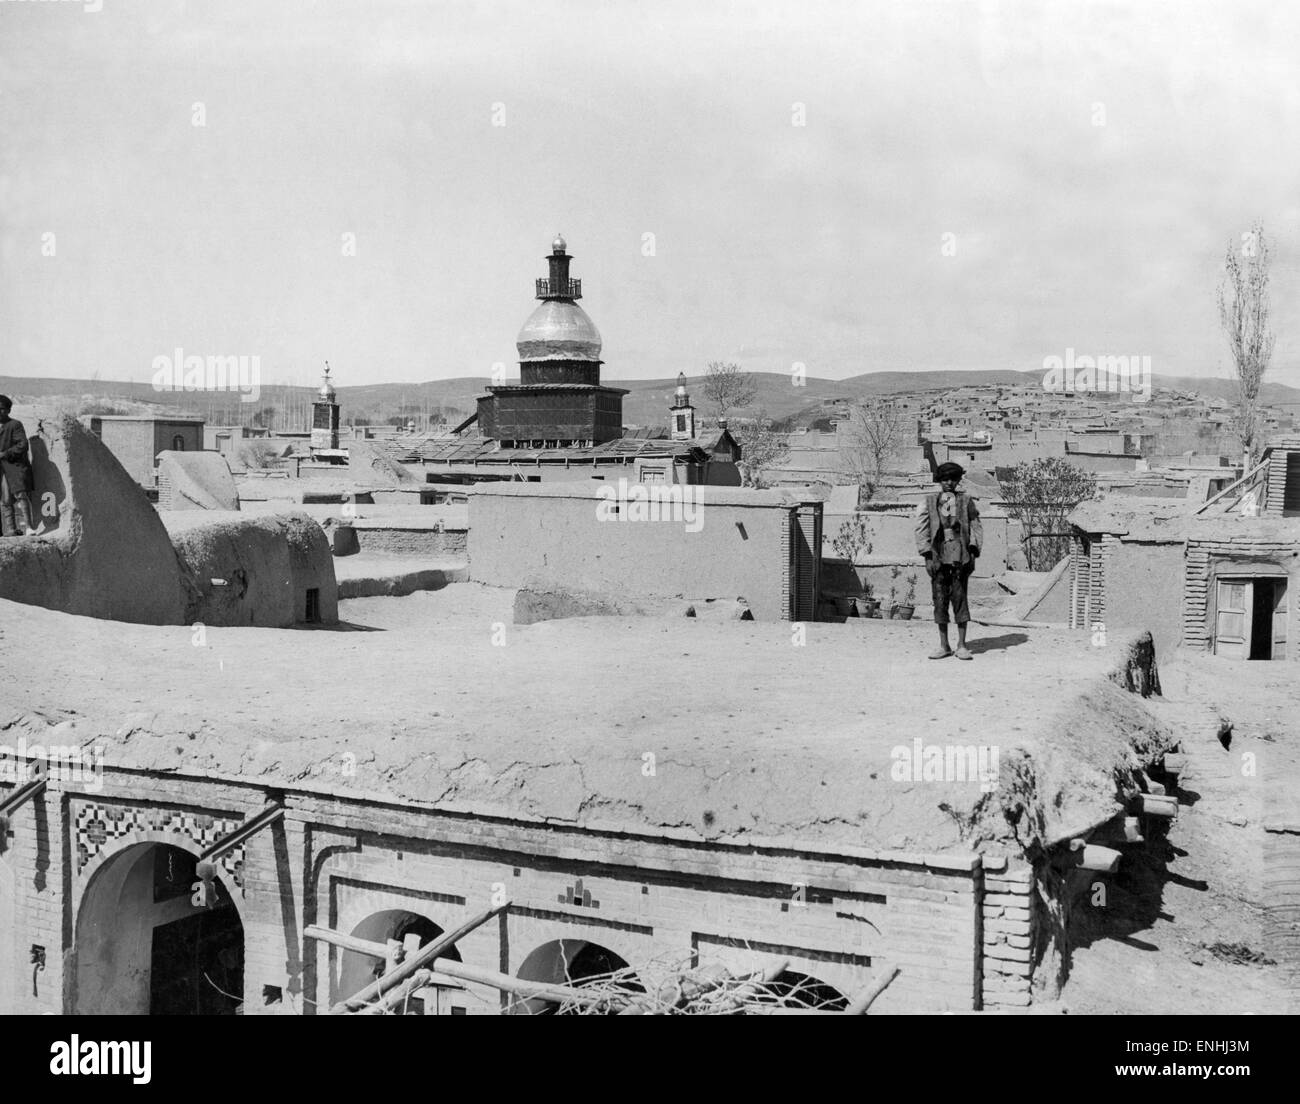 Kermanshah, baute eine Schlamm Stadt in Persien. Kermanshah ist die Hauptstadt der Provinz Kermanshah, 525 km von Teheran im westlichen Teil des Iran, ca. 1926. Im Bild: Ansicht der Moschee mit silbernen Kuppel, die Kuppel Anglo - persische Öl Dosen besteht. Stockfoto